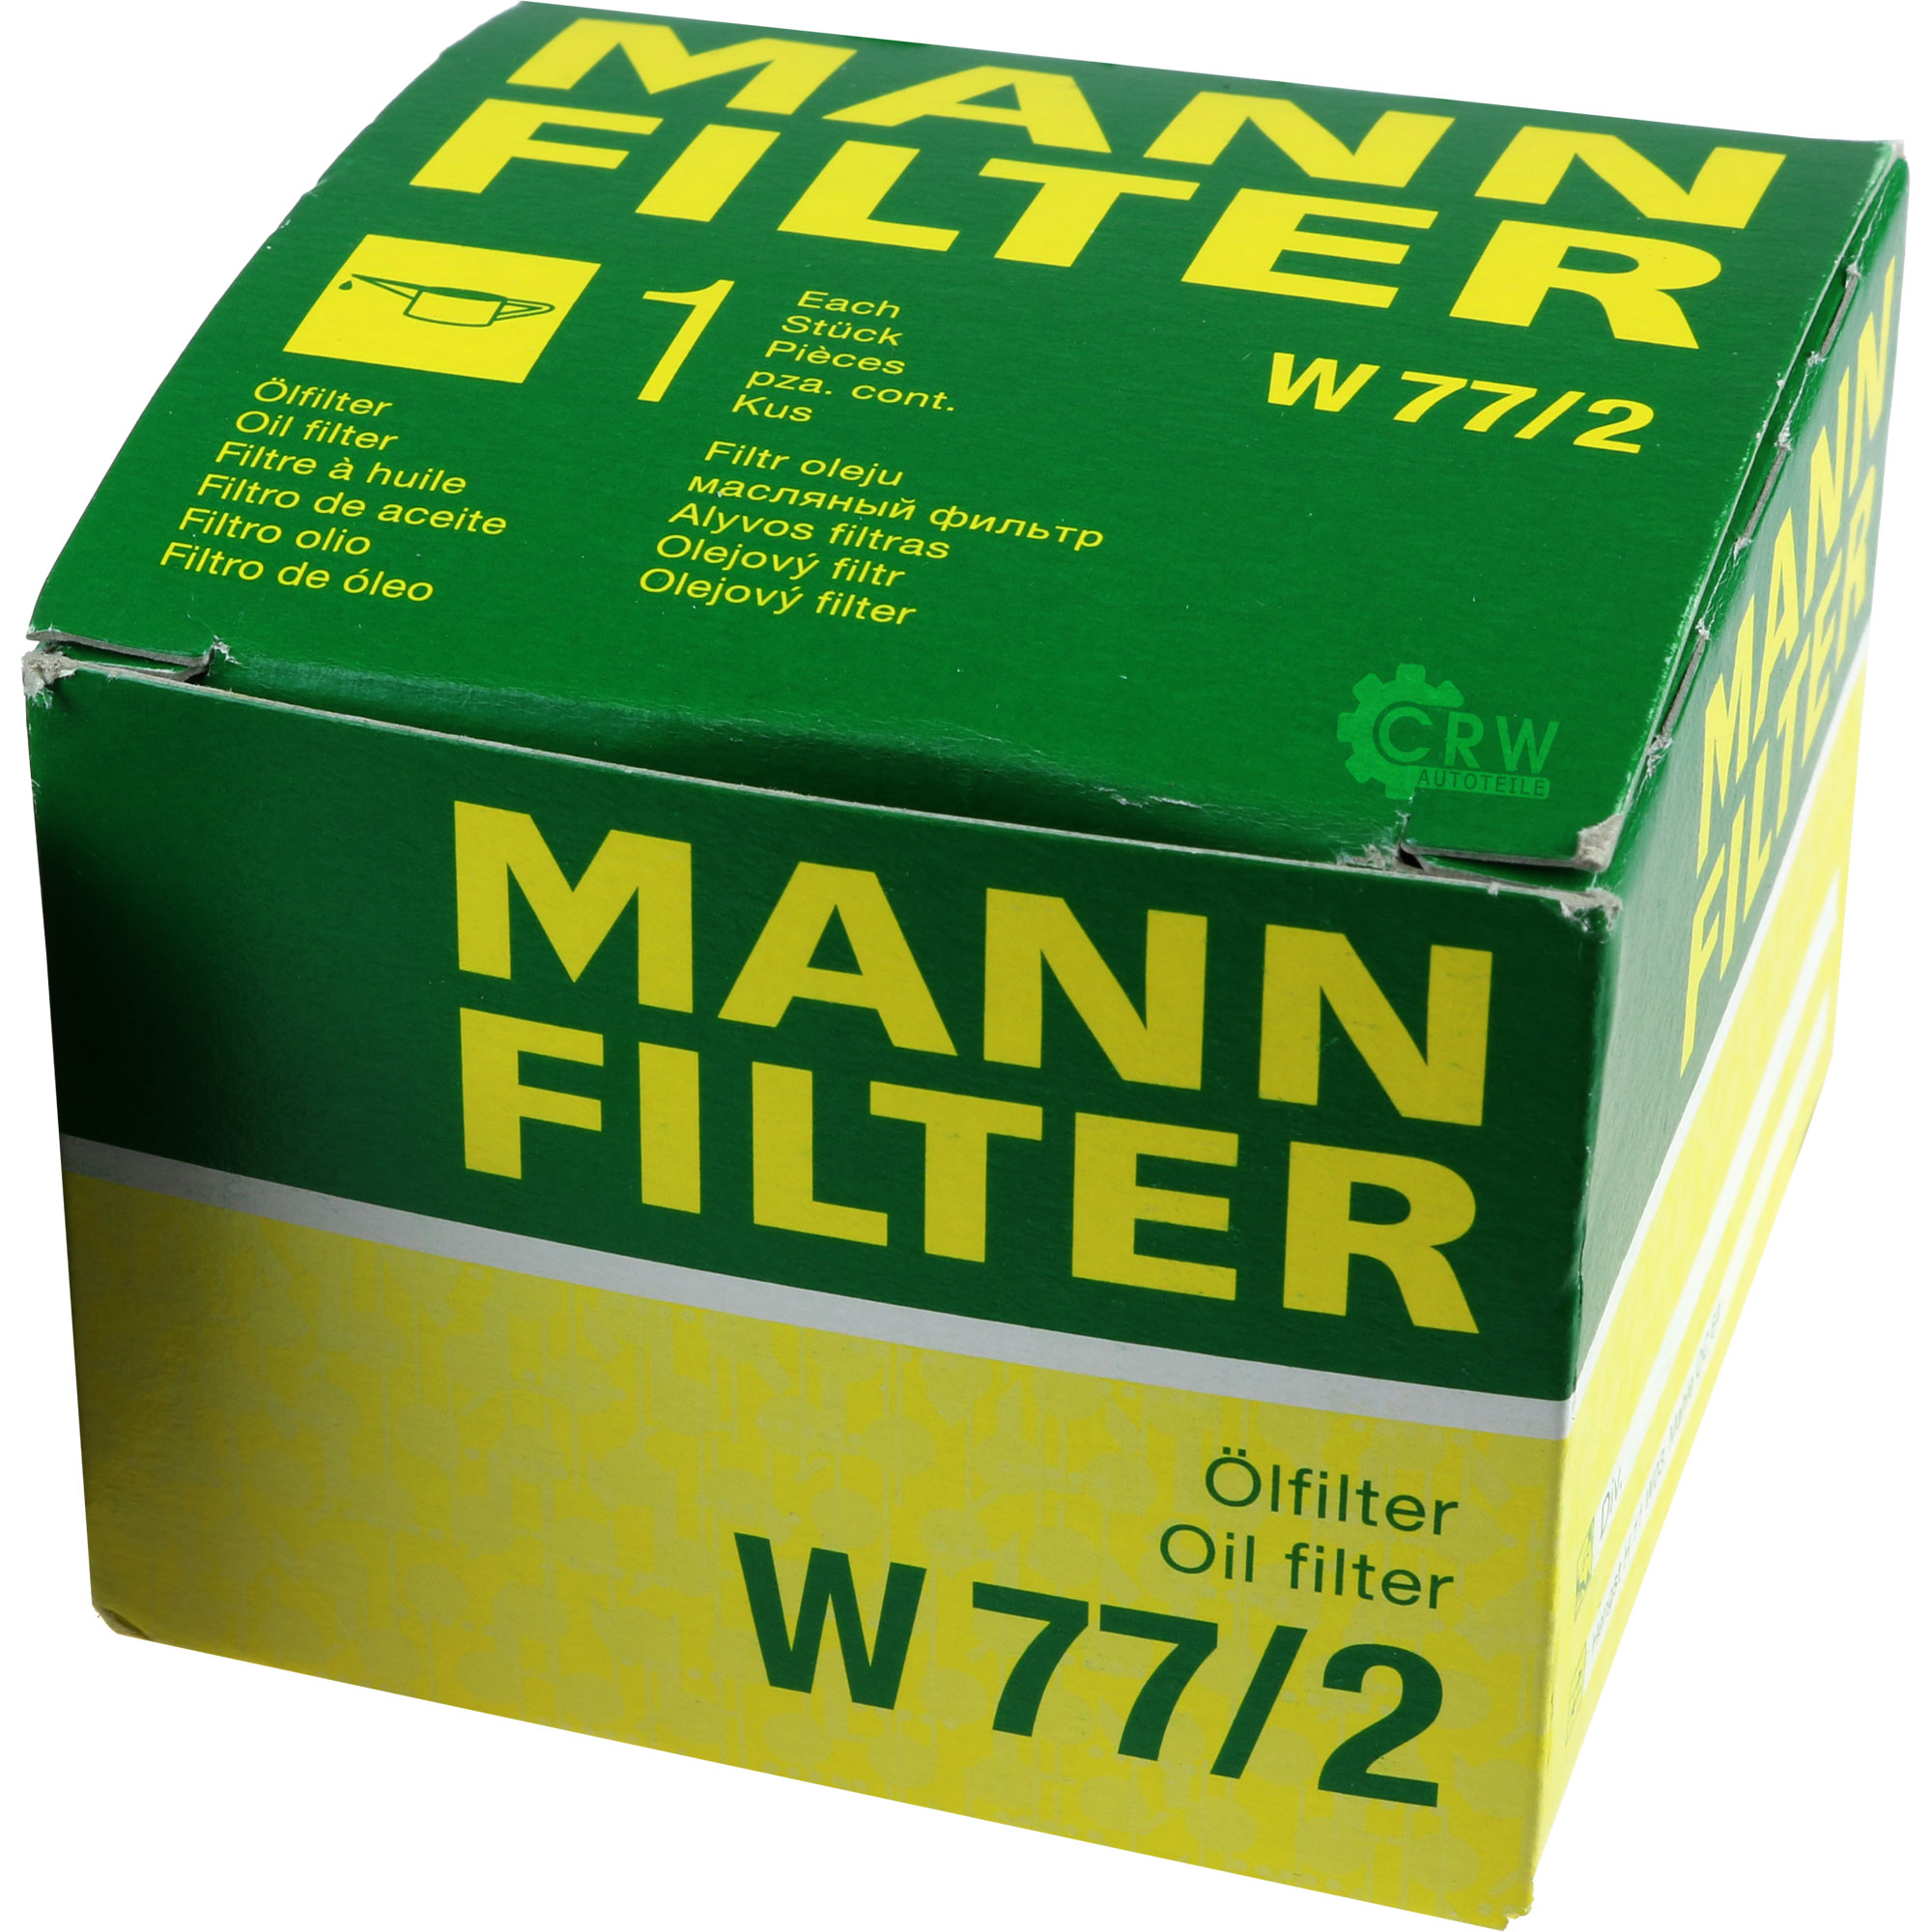 MANN-FILTER Ölfilter W 77/2 Oil Filter